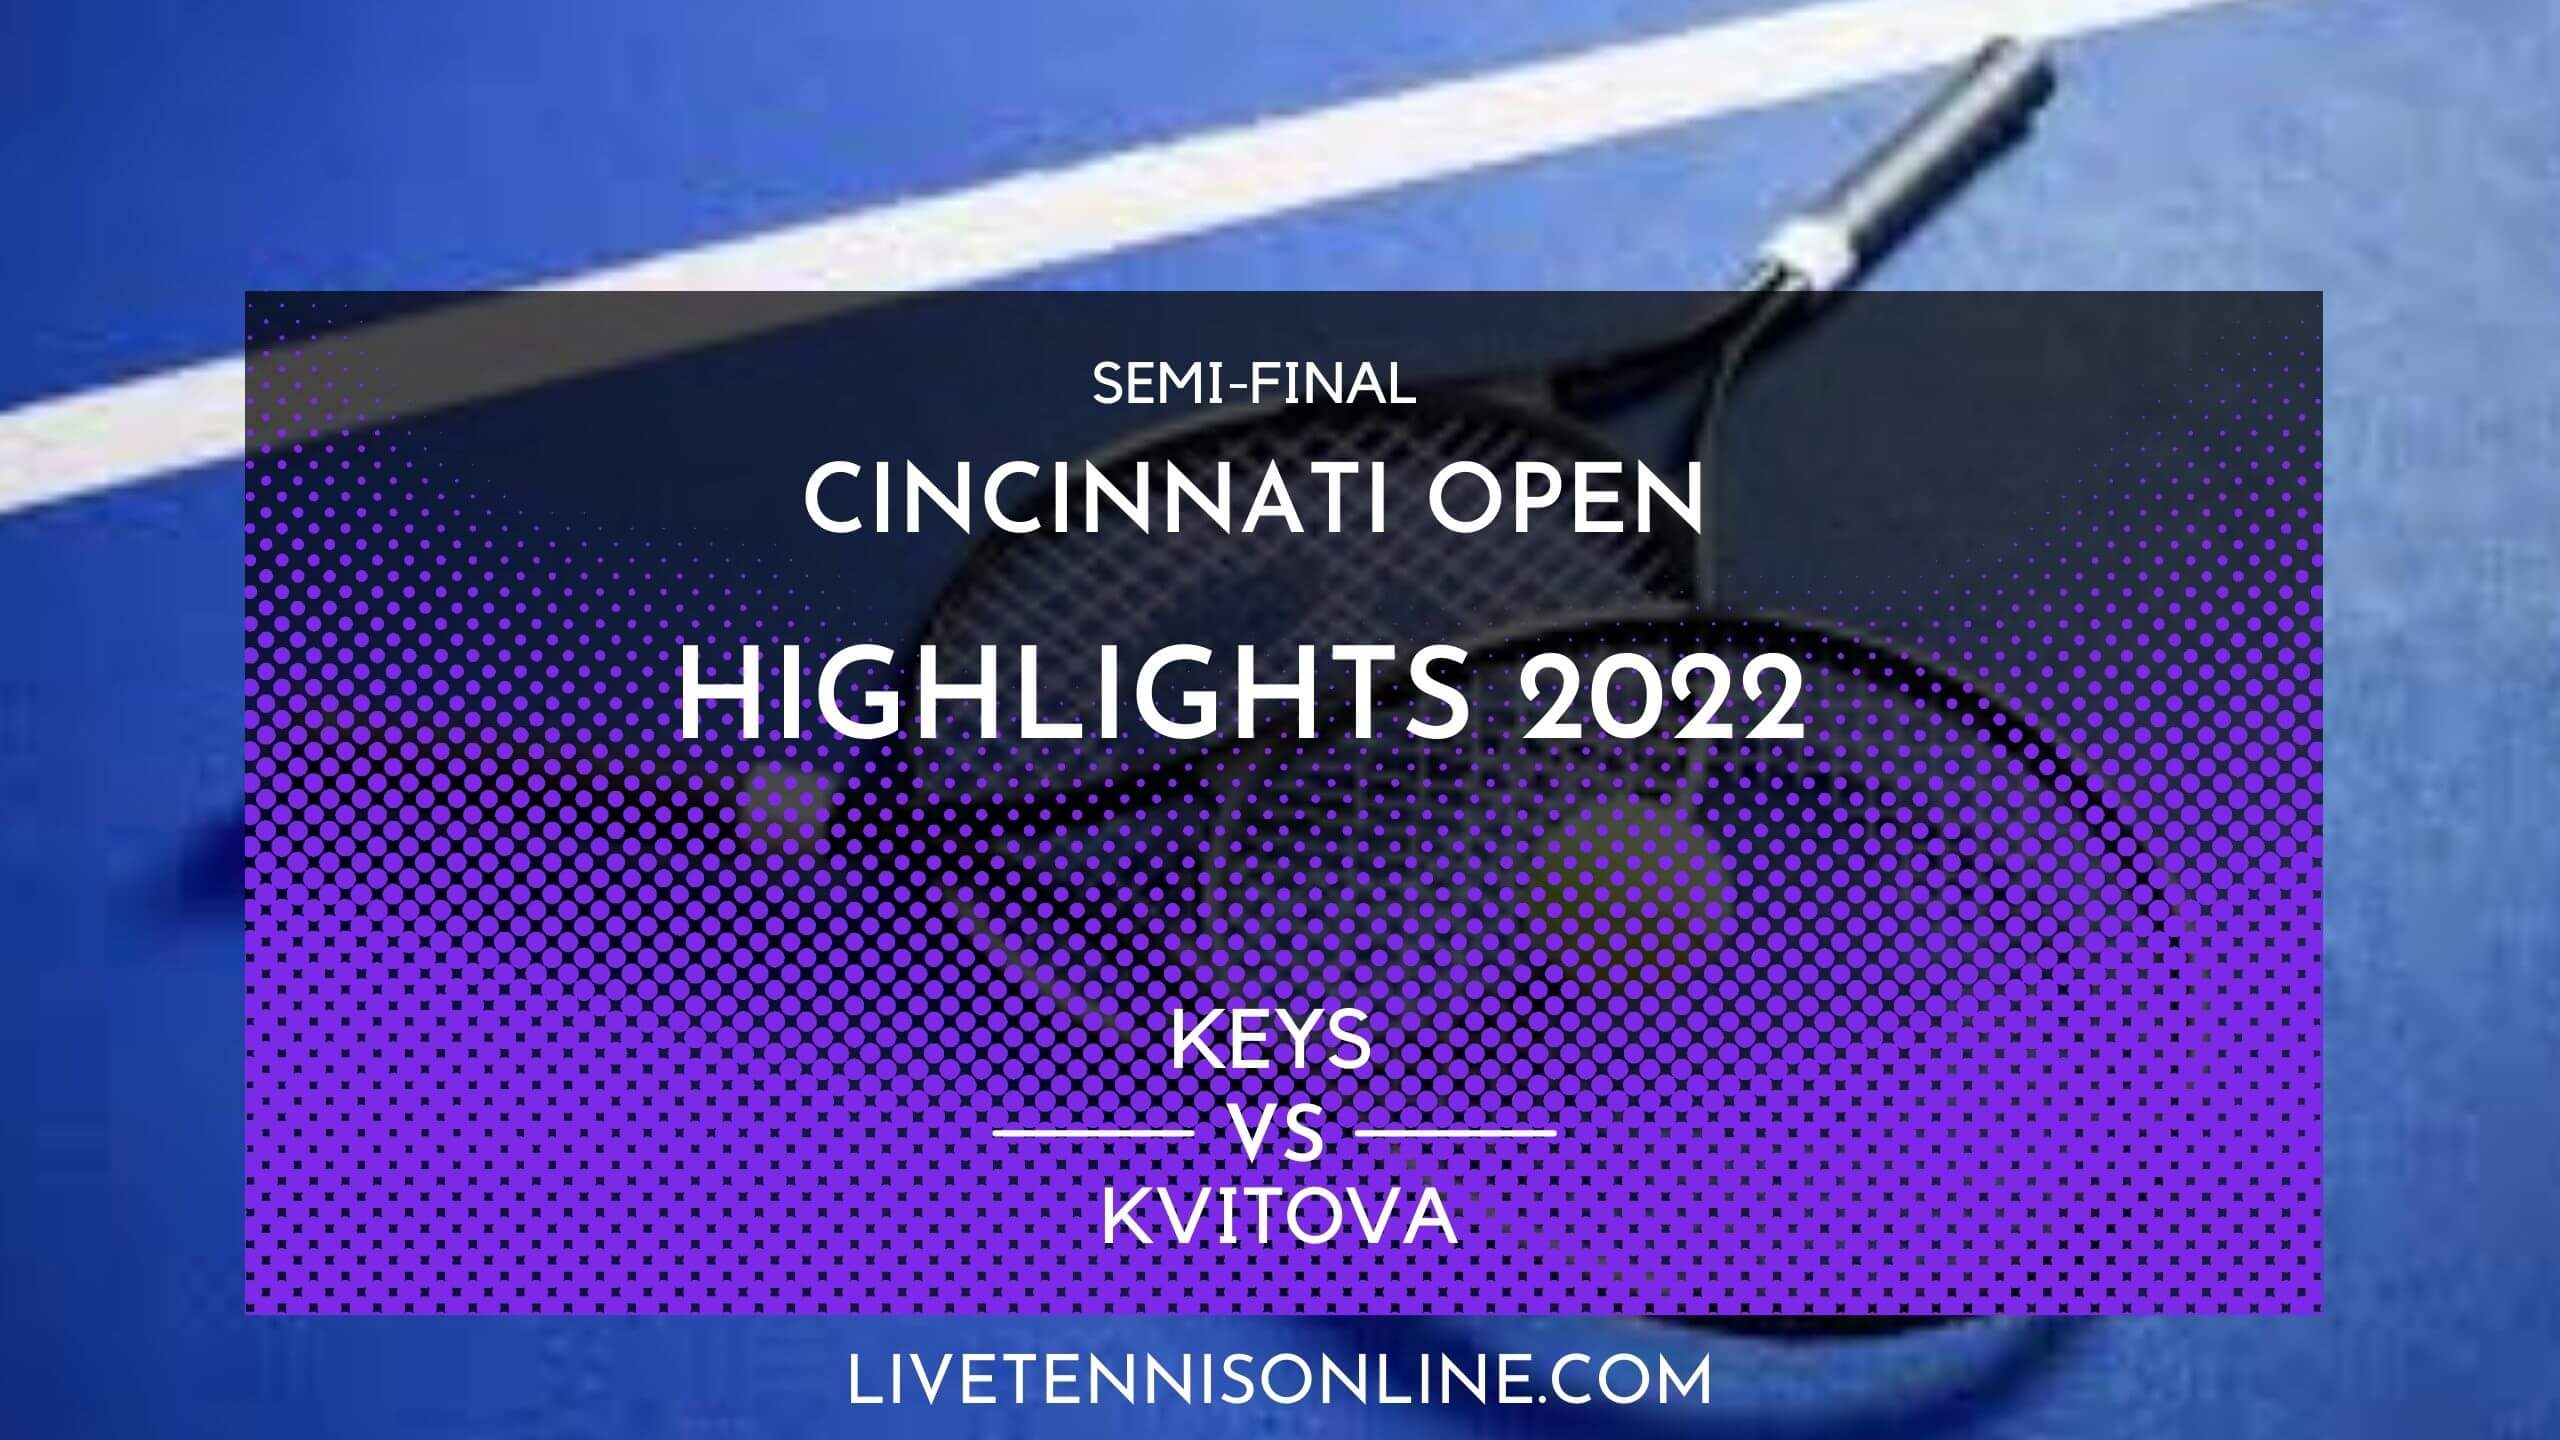 Keys Vs Kvitova SF Highlights 2022 Cincinnati Open